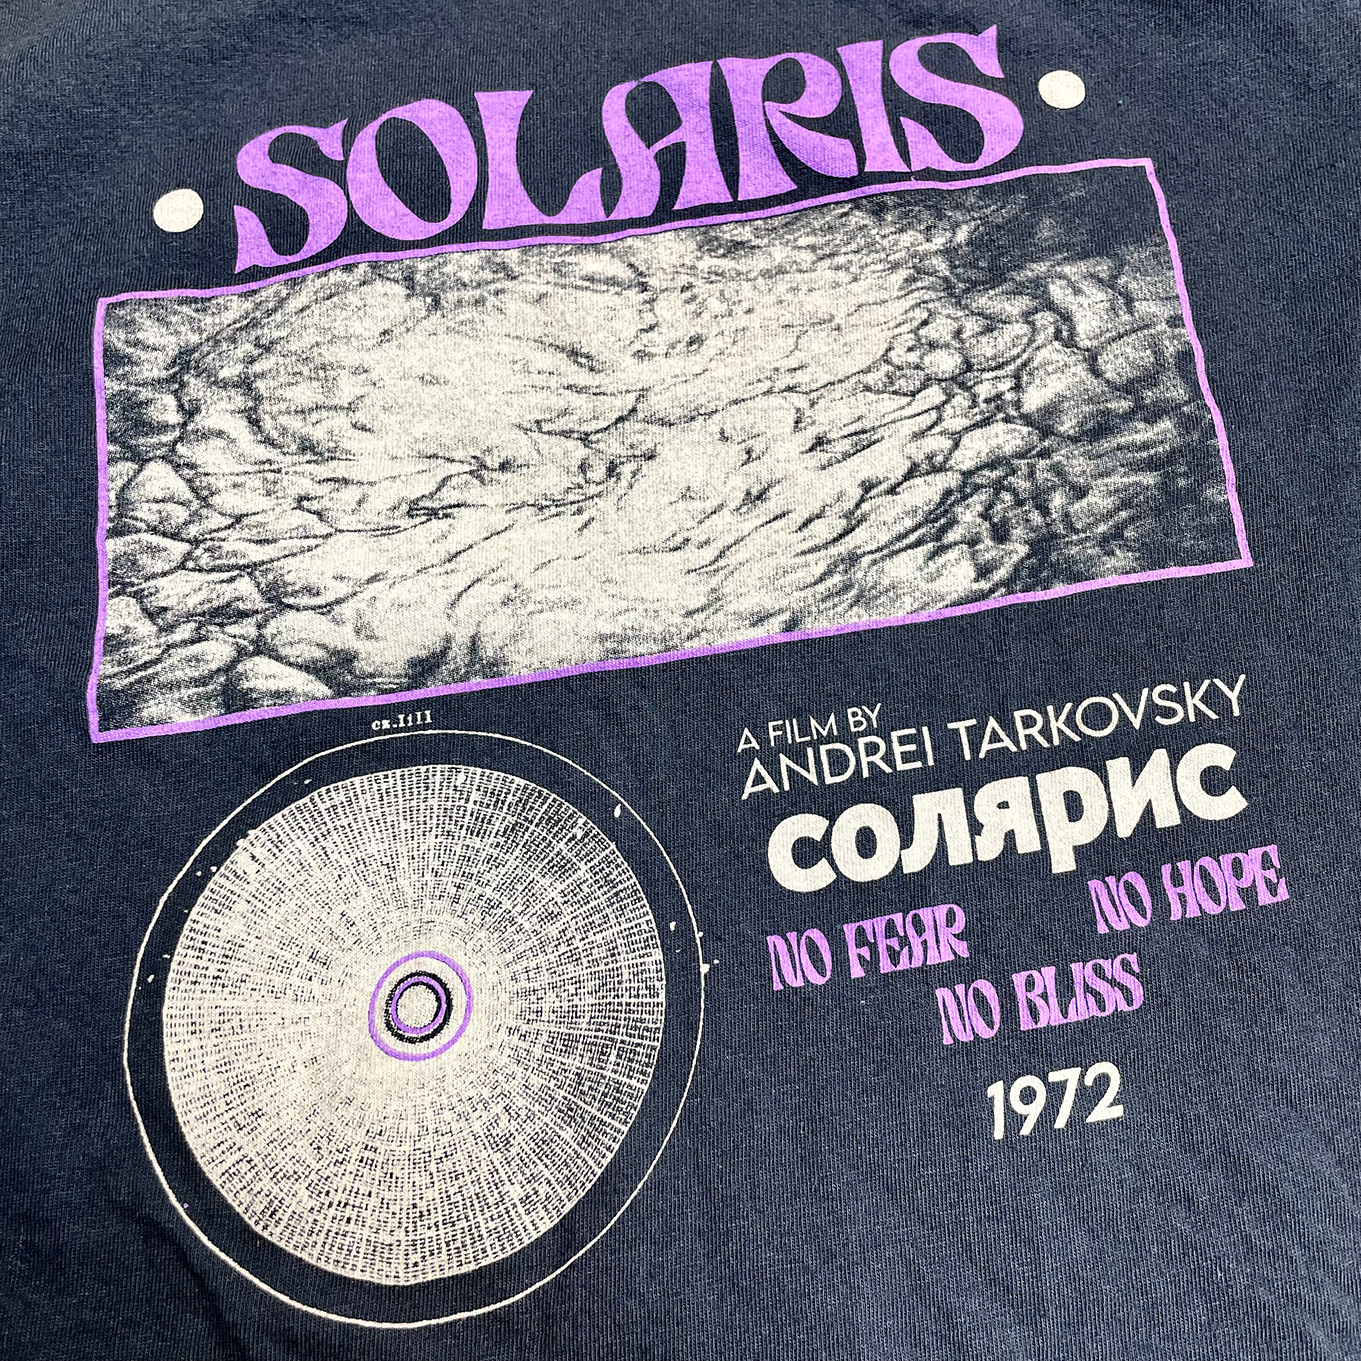 Camiseta Solaris 1972